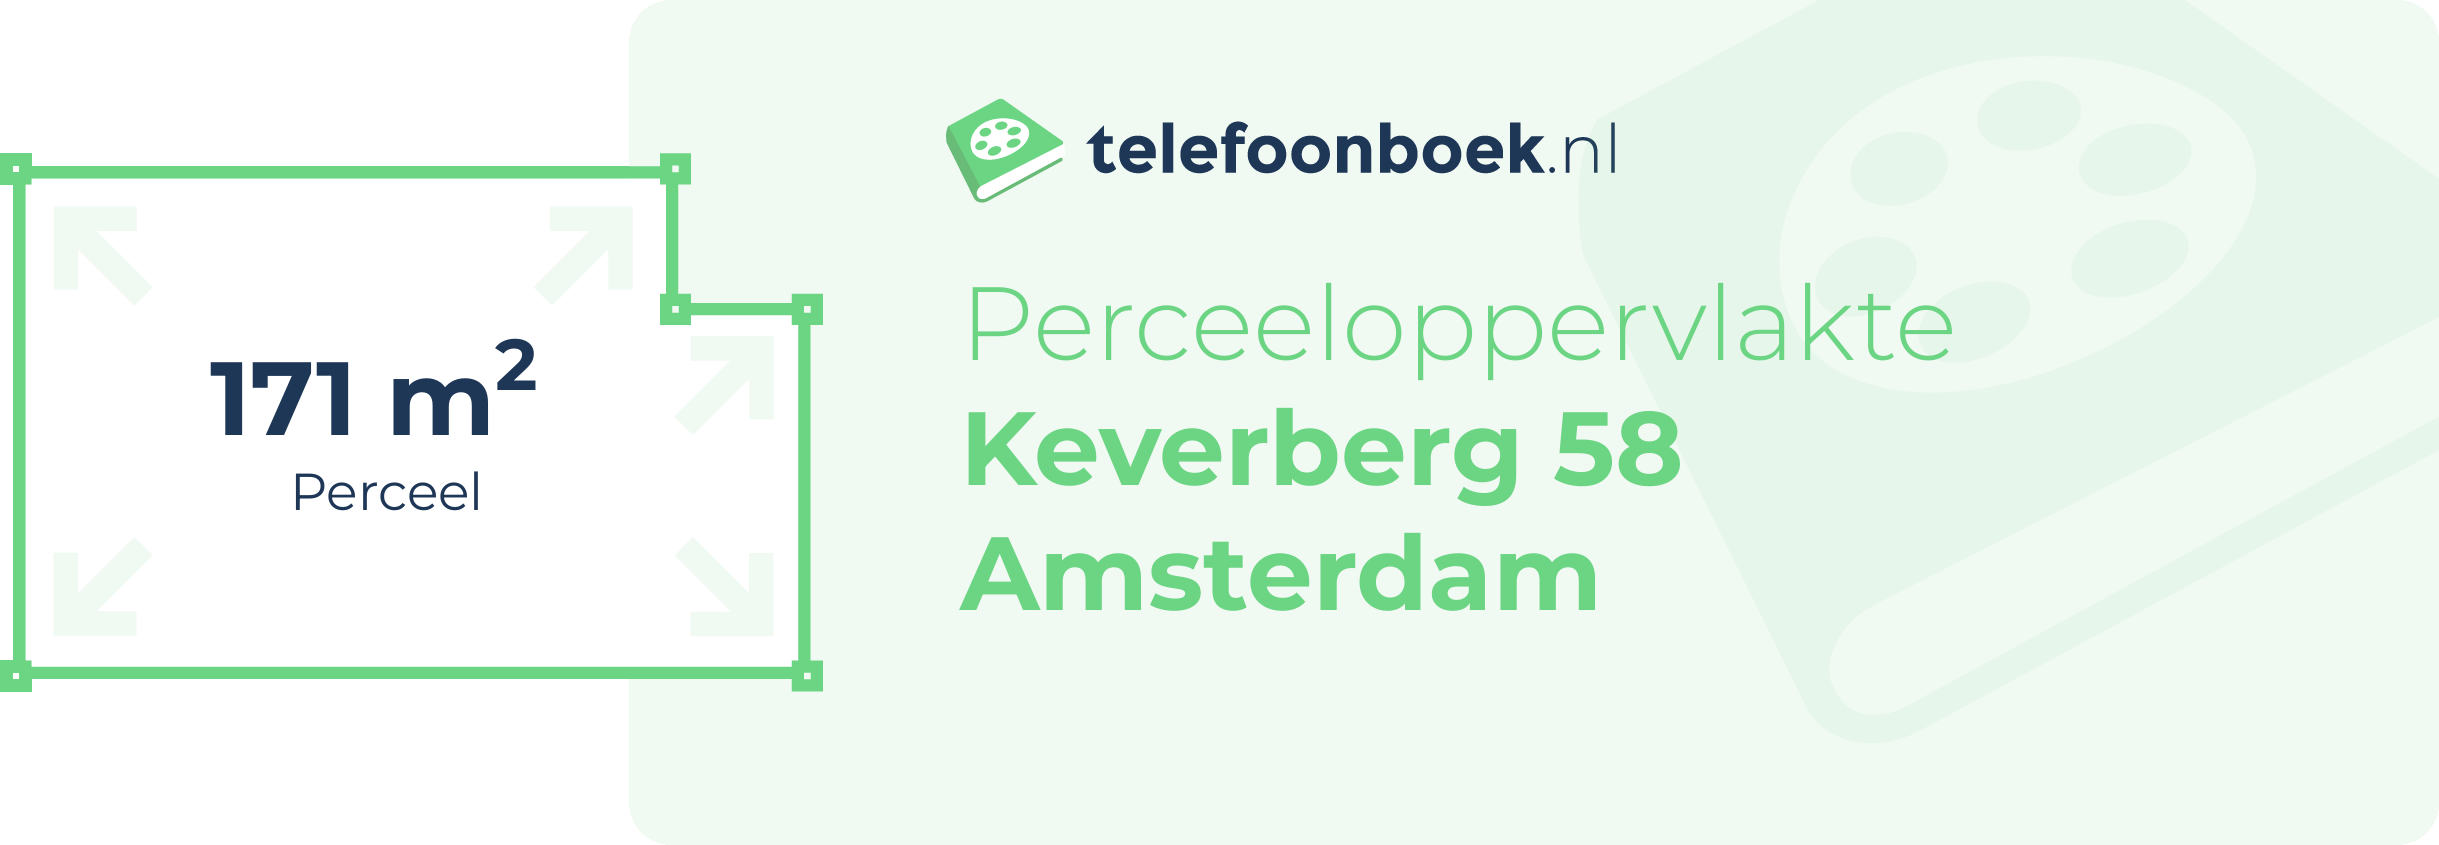 Perceeloppervlakte Keverberg 58 Amsterdam